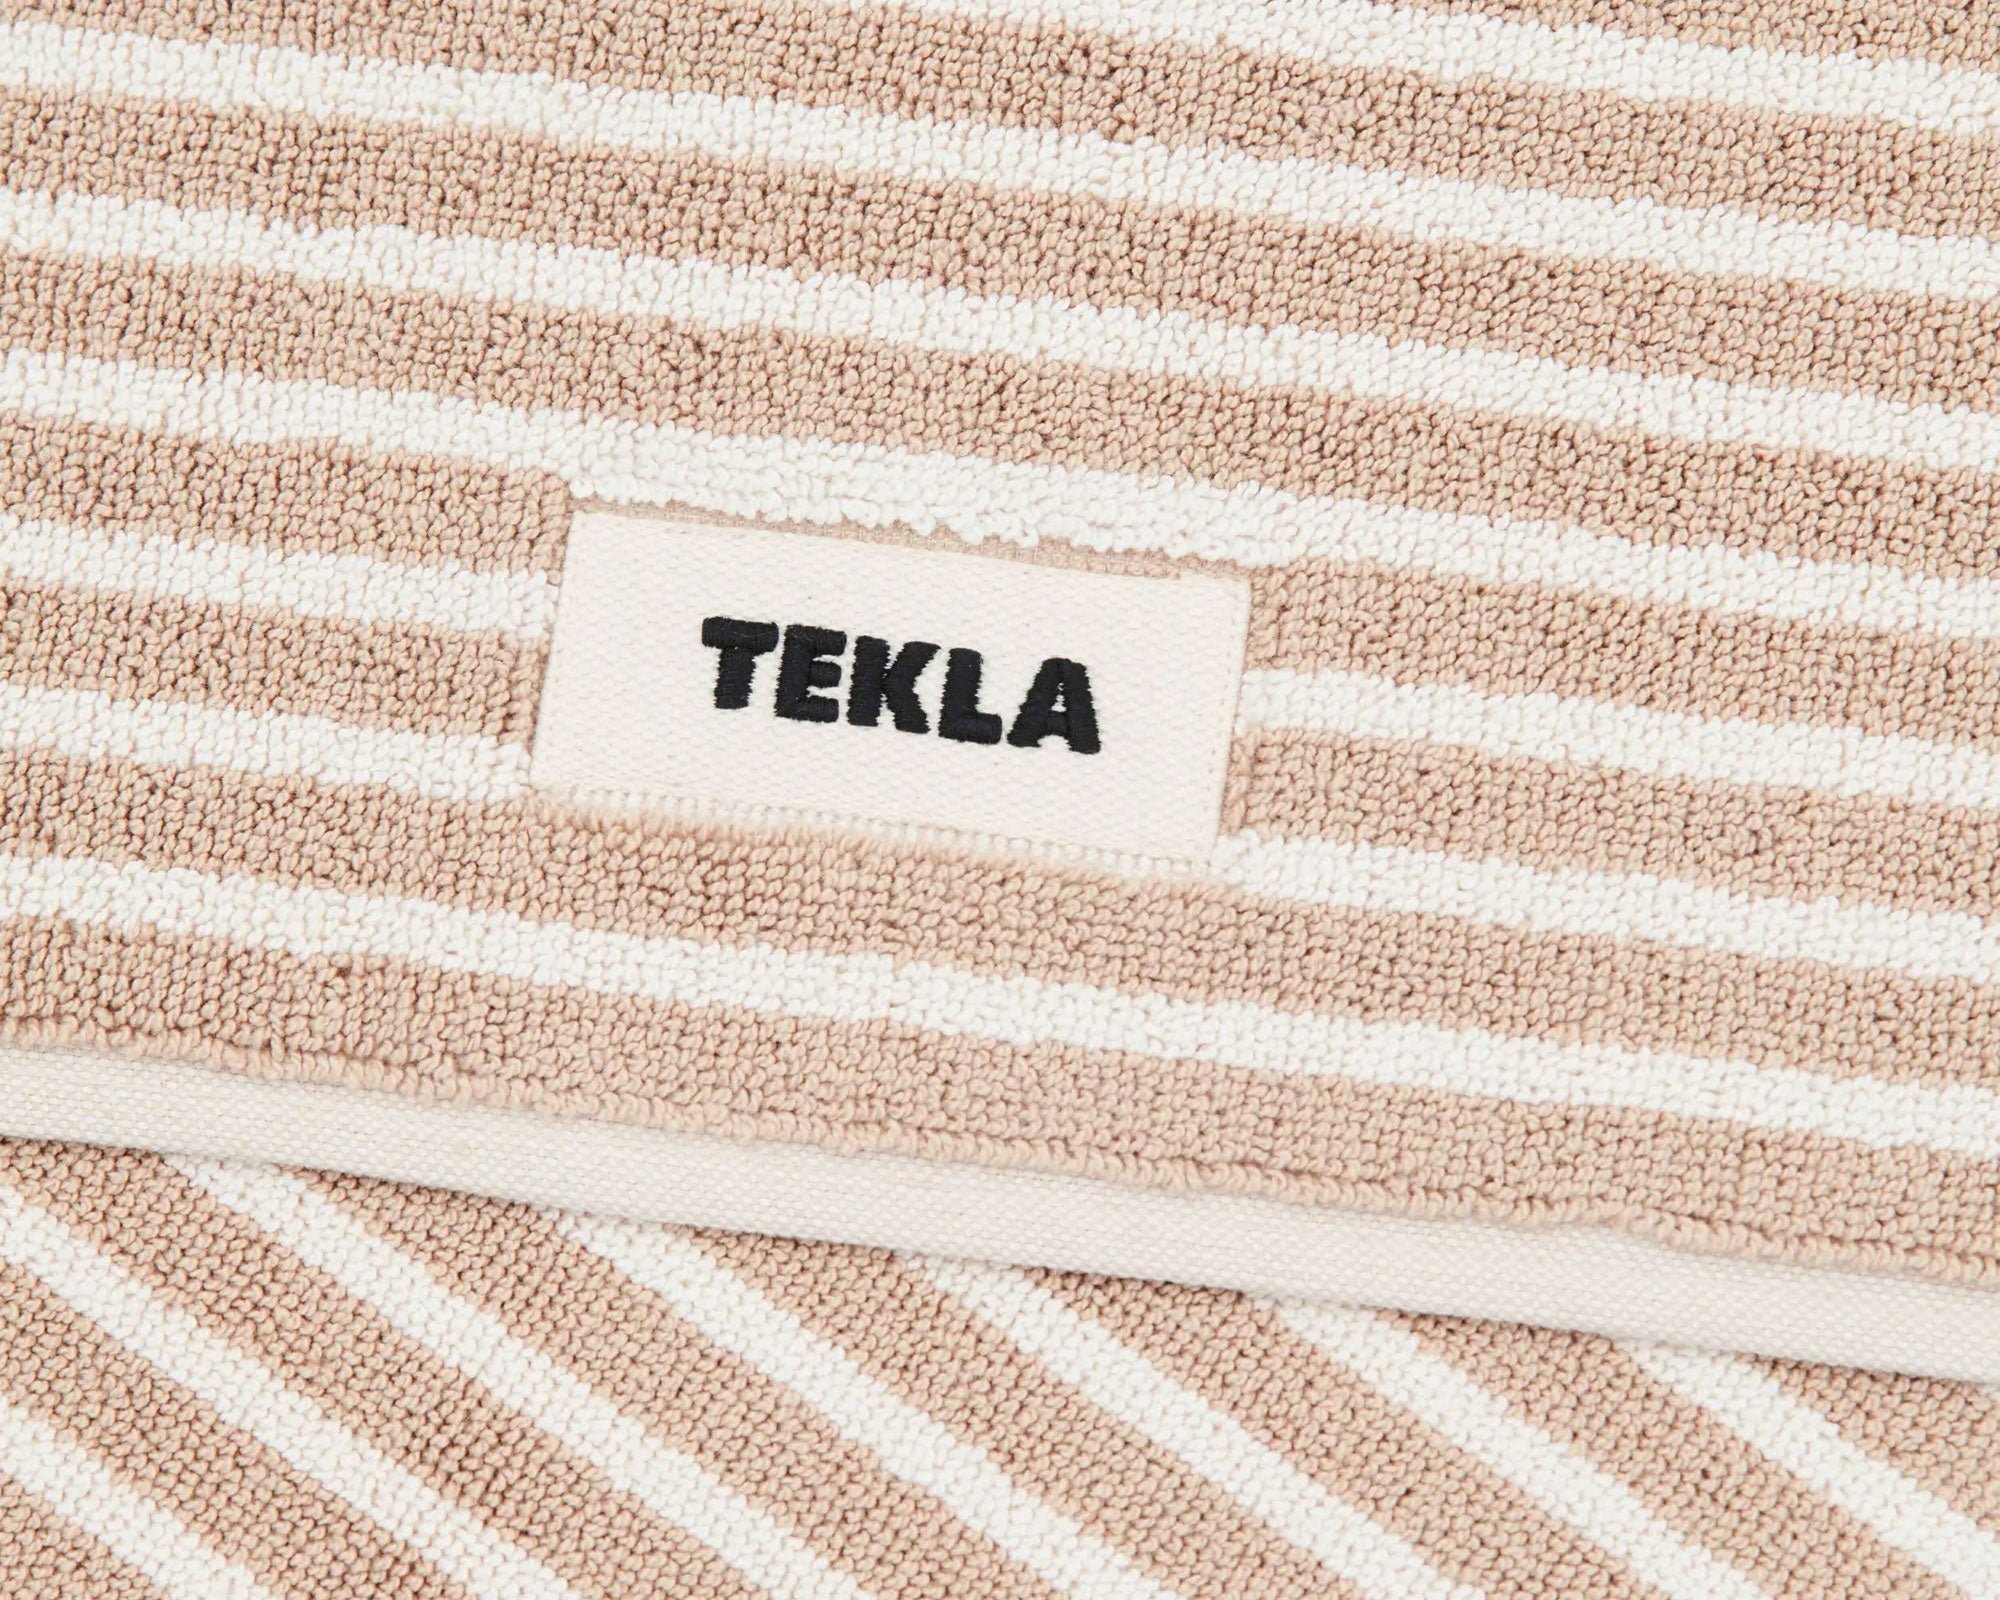 Tekla Organic Cotton Bath Mat - Ivory Stripes